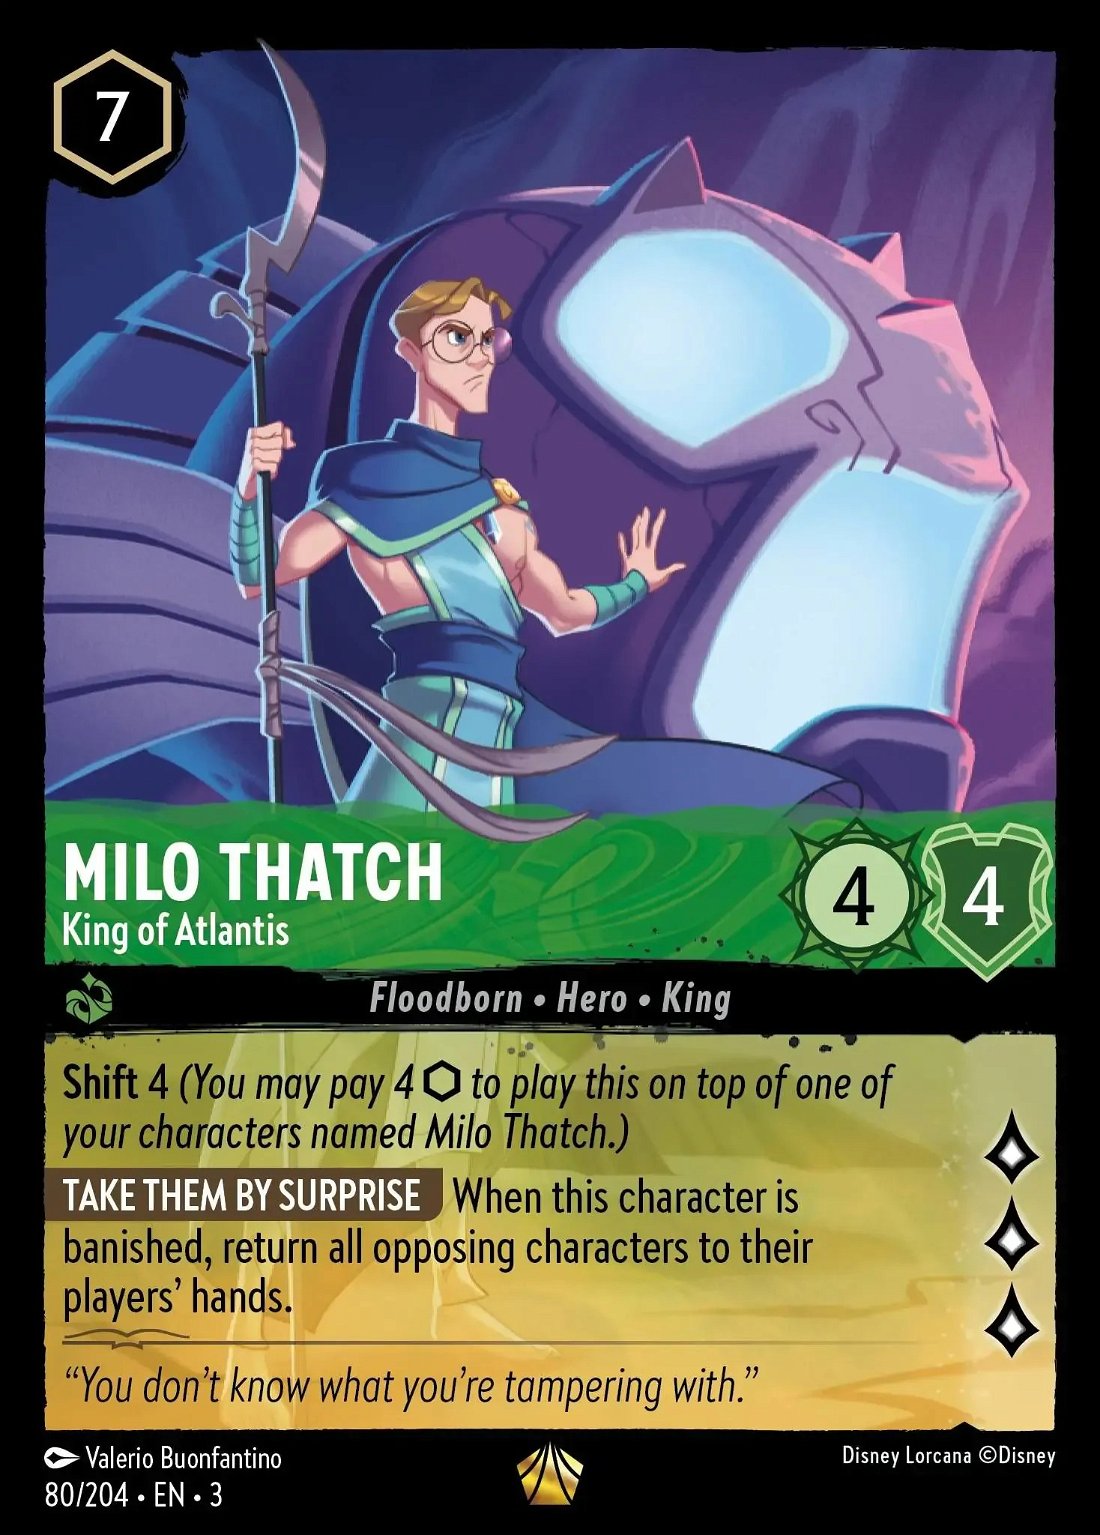 Milo Thatch - King of Atlantis Crop image Wallpaper